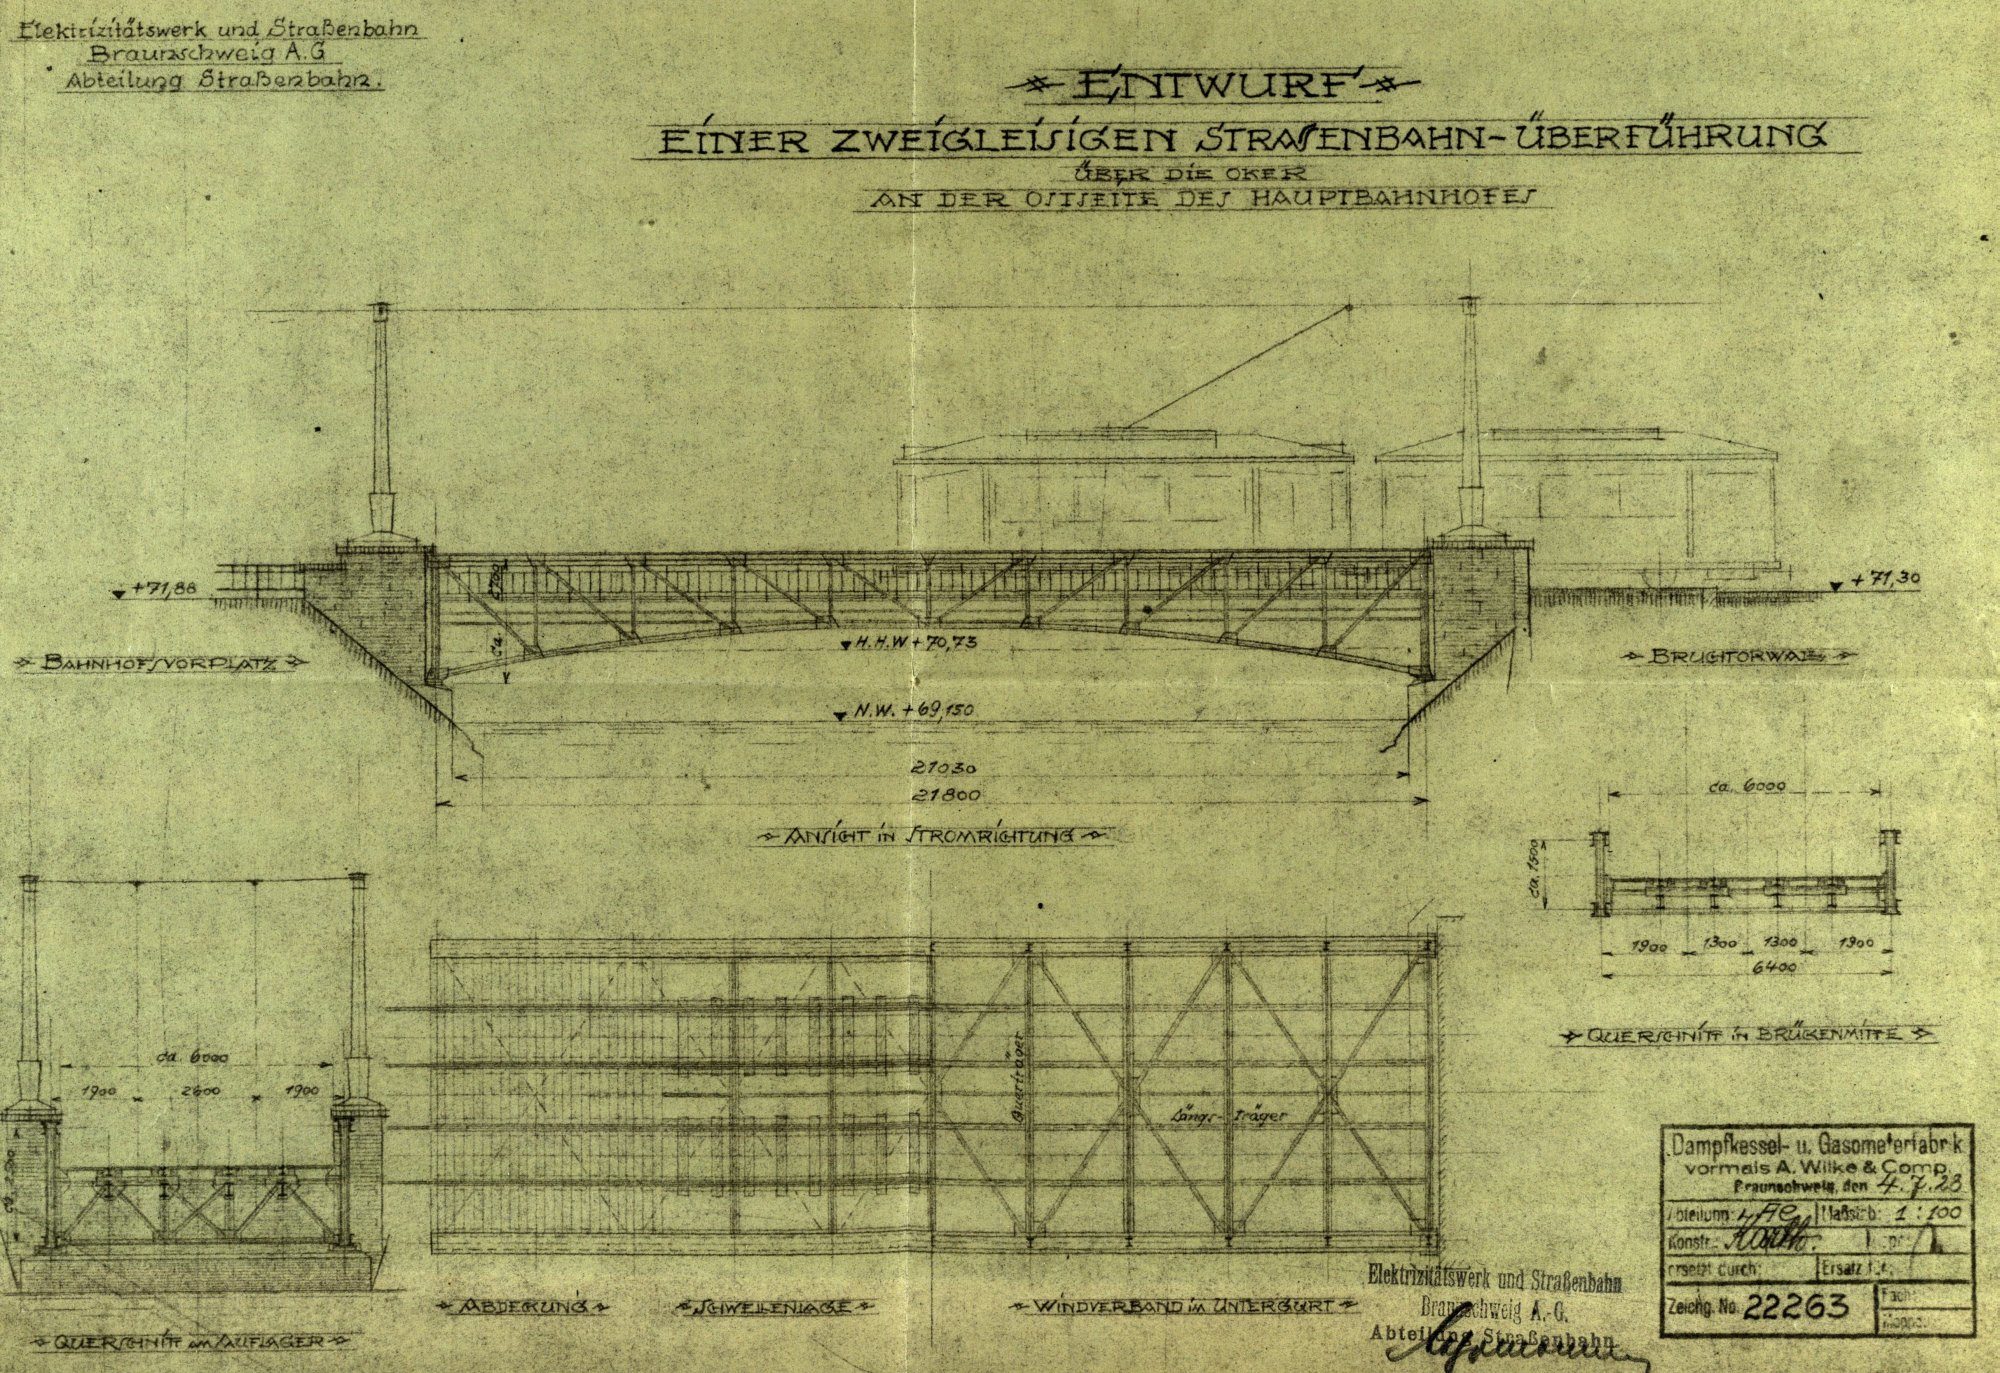 Bahnhofsbrücke, Umbauplan der östlichen Brücke für Straßenbahnverkehr, 1928